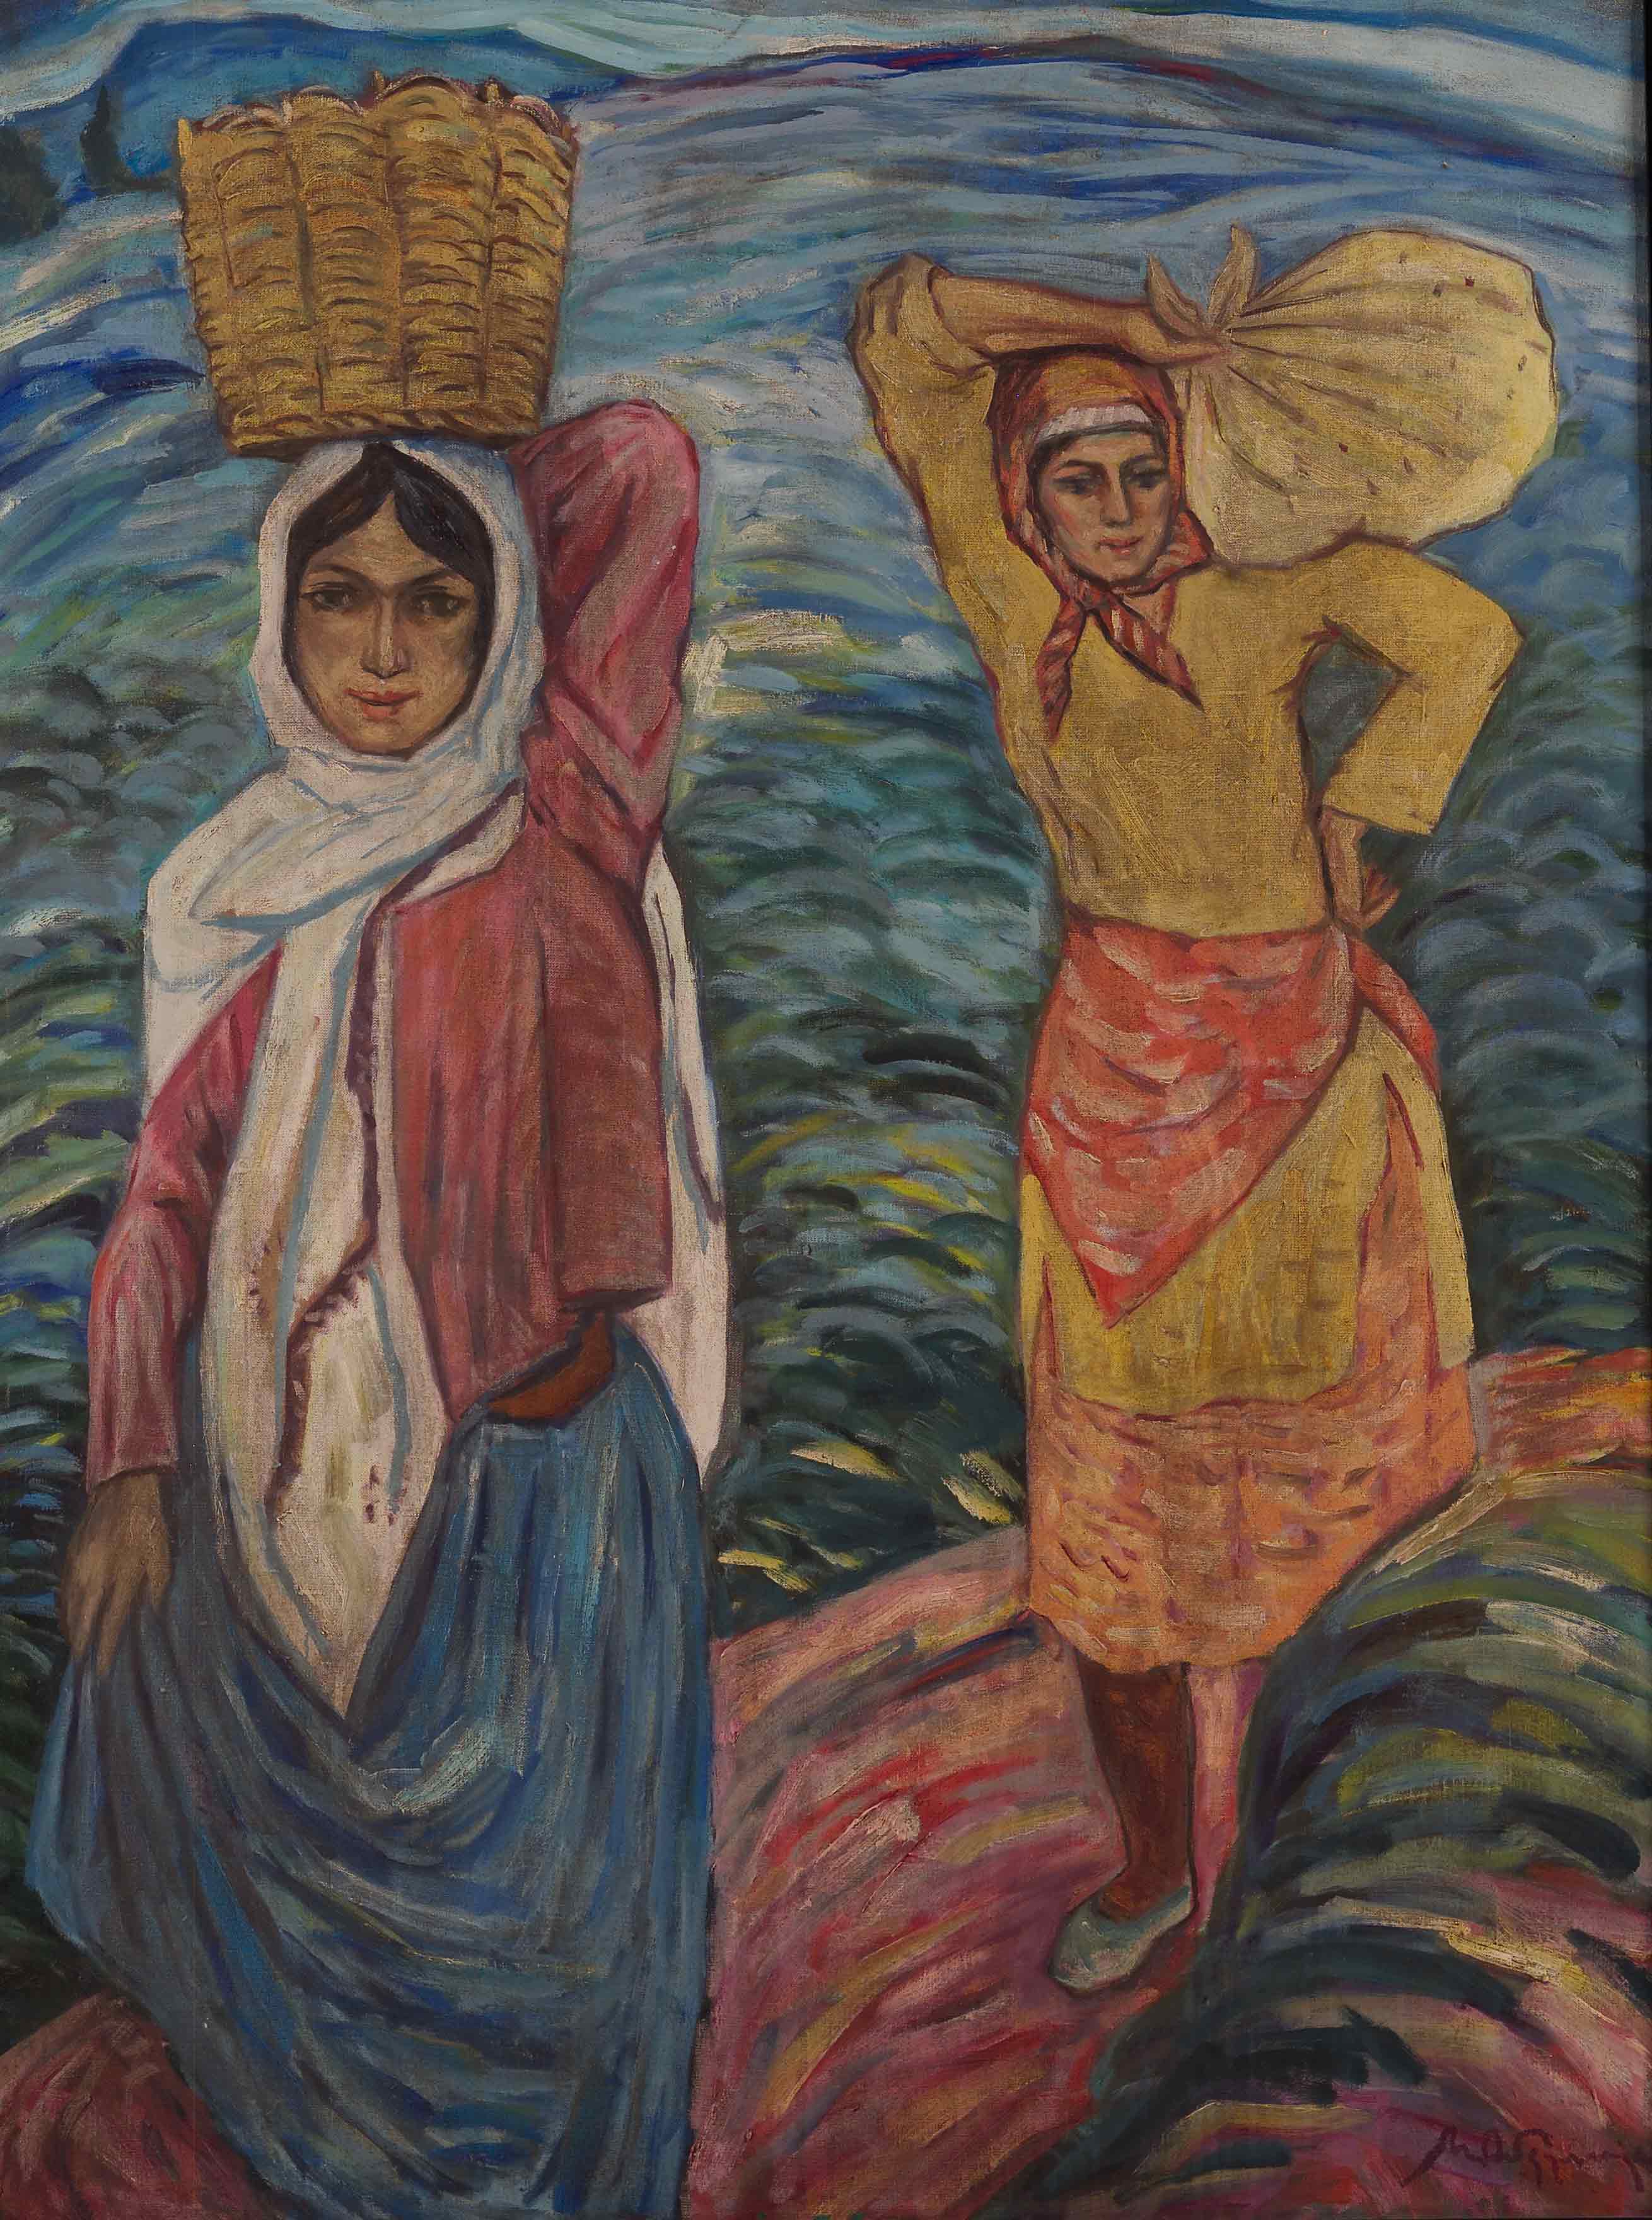 Women carrying cargo